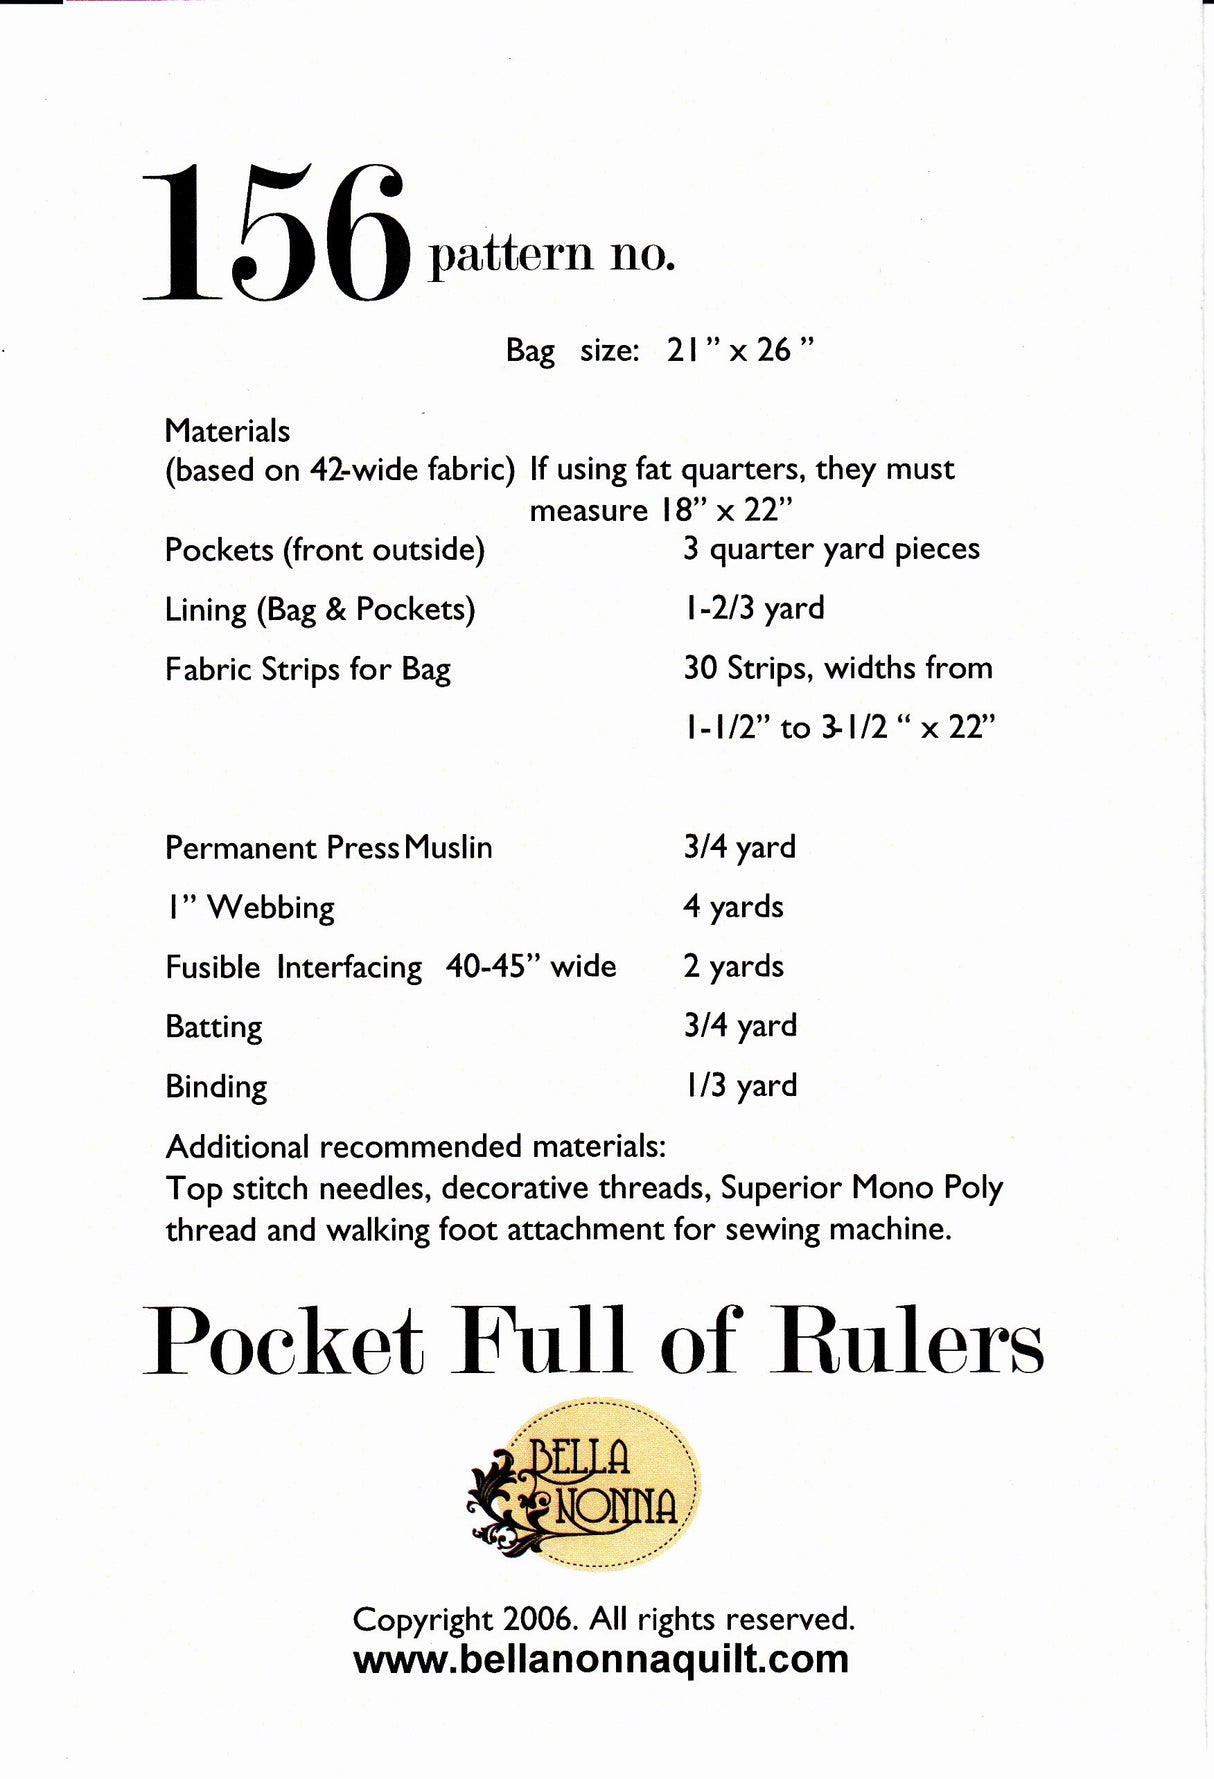 Pocket Full of Rulers